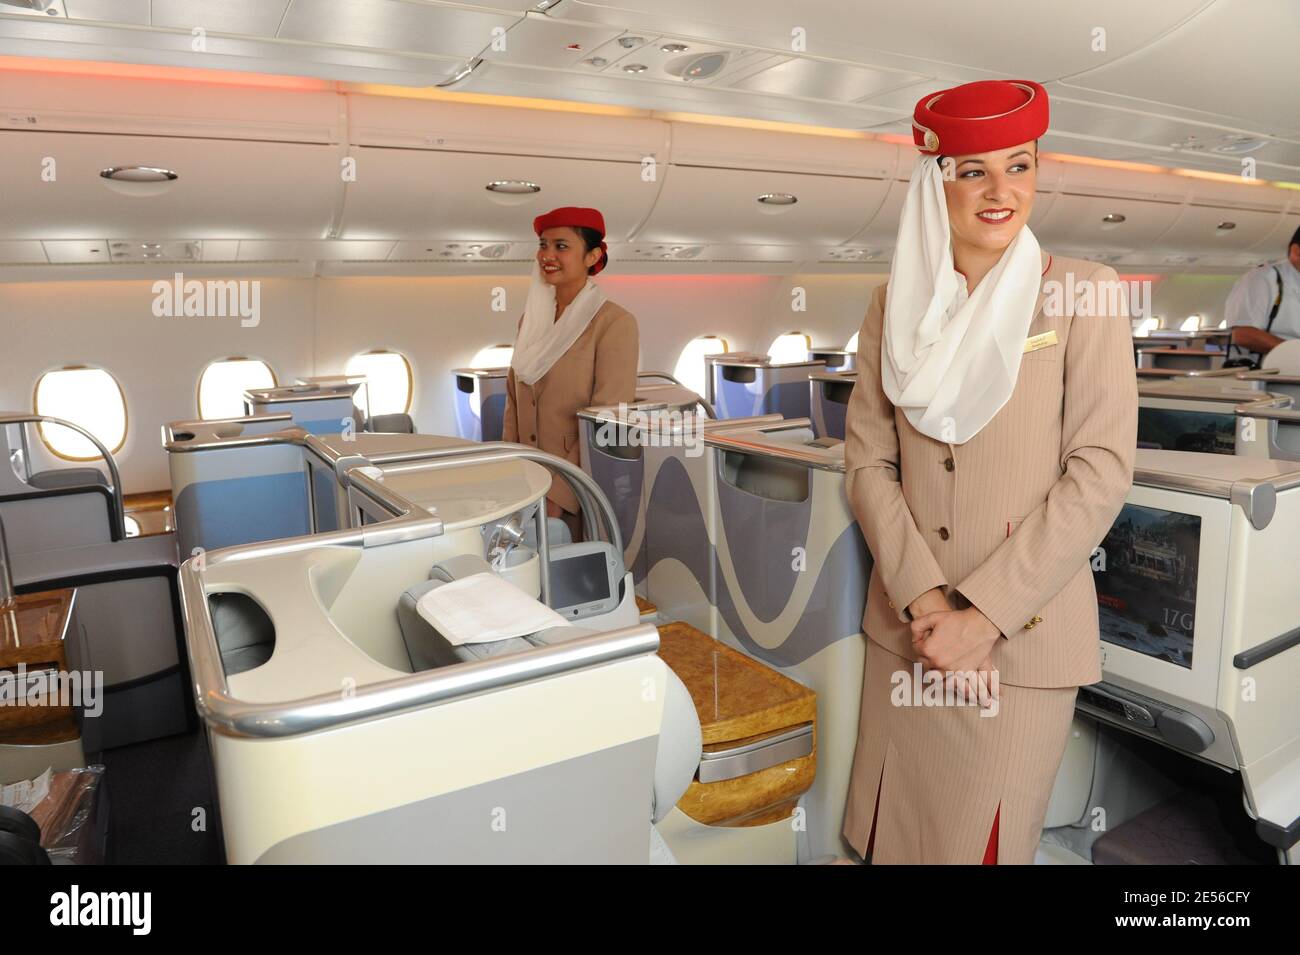 Сайт эмиратские авиалинии. Авиалинии Дубай Эмирейтс. А380 Эмирейтс стюардессы. Дубайская авиакомпания Emirates. Авиалинии Дубай Эмирейтс стюардессы.